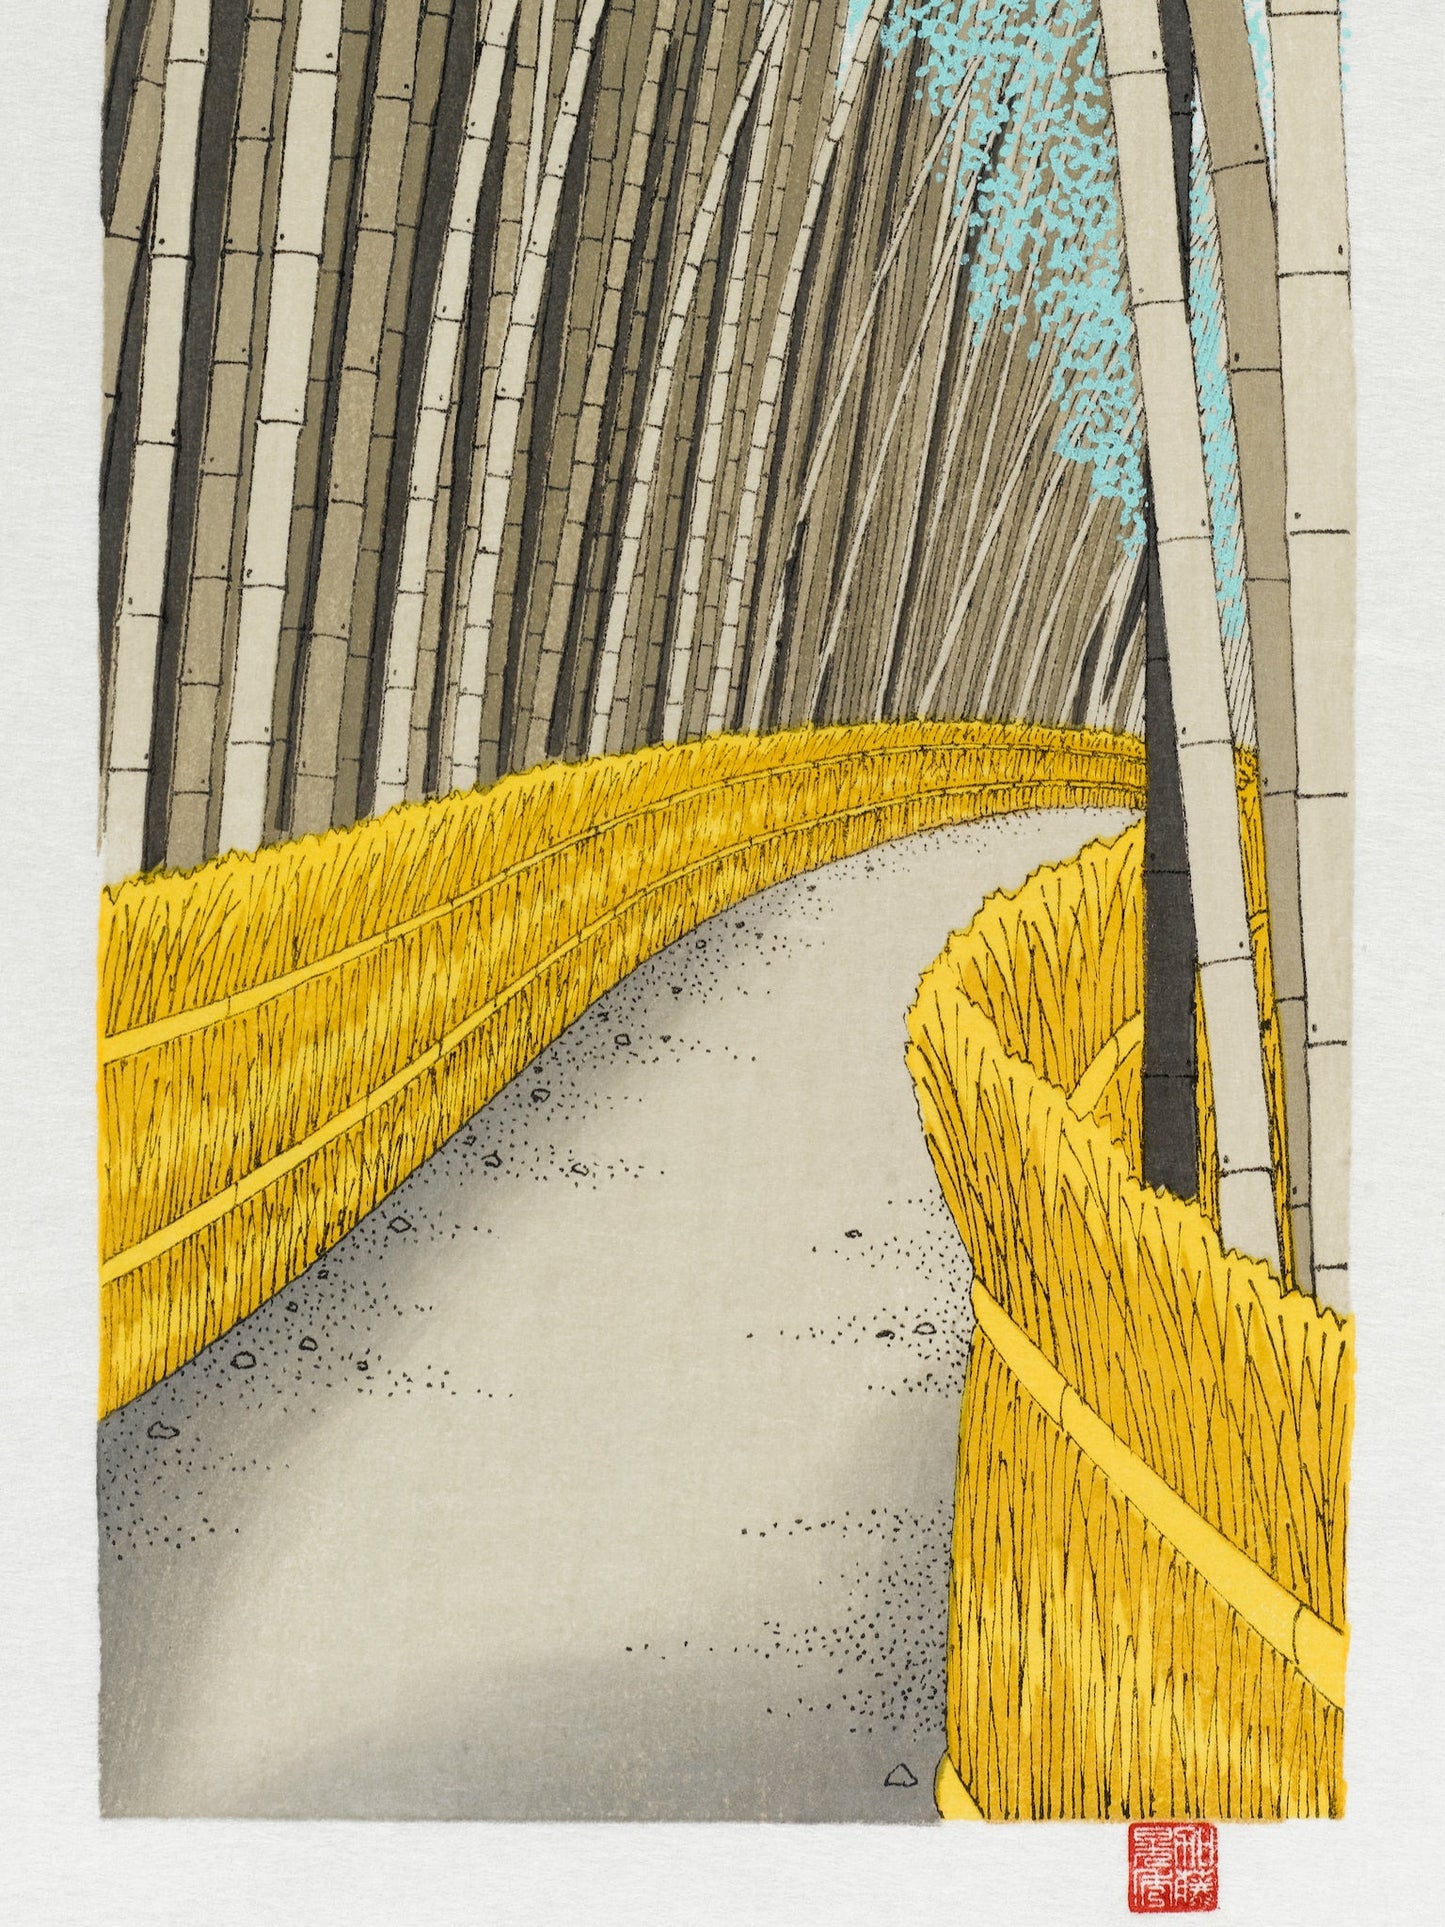 estampe japonaise de teruhide kato un chemin dans la foret de bambous géants a arashiyama, le chemin bordé de palissade de paille jaune